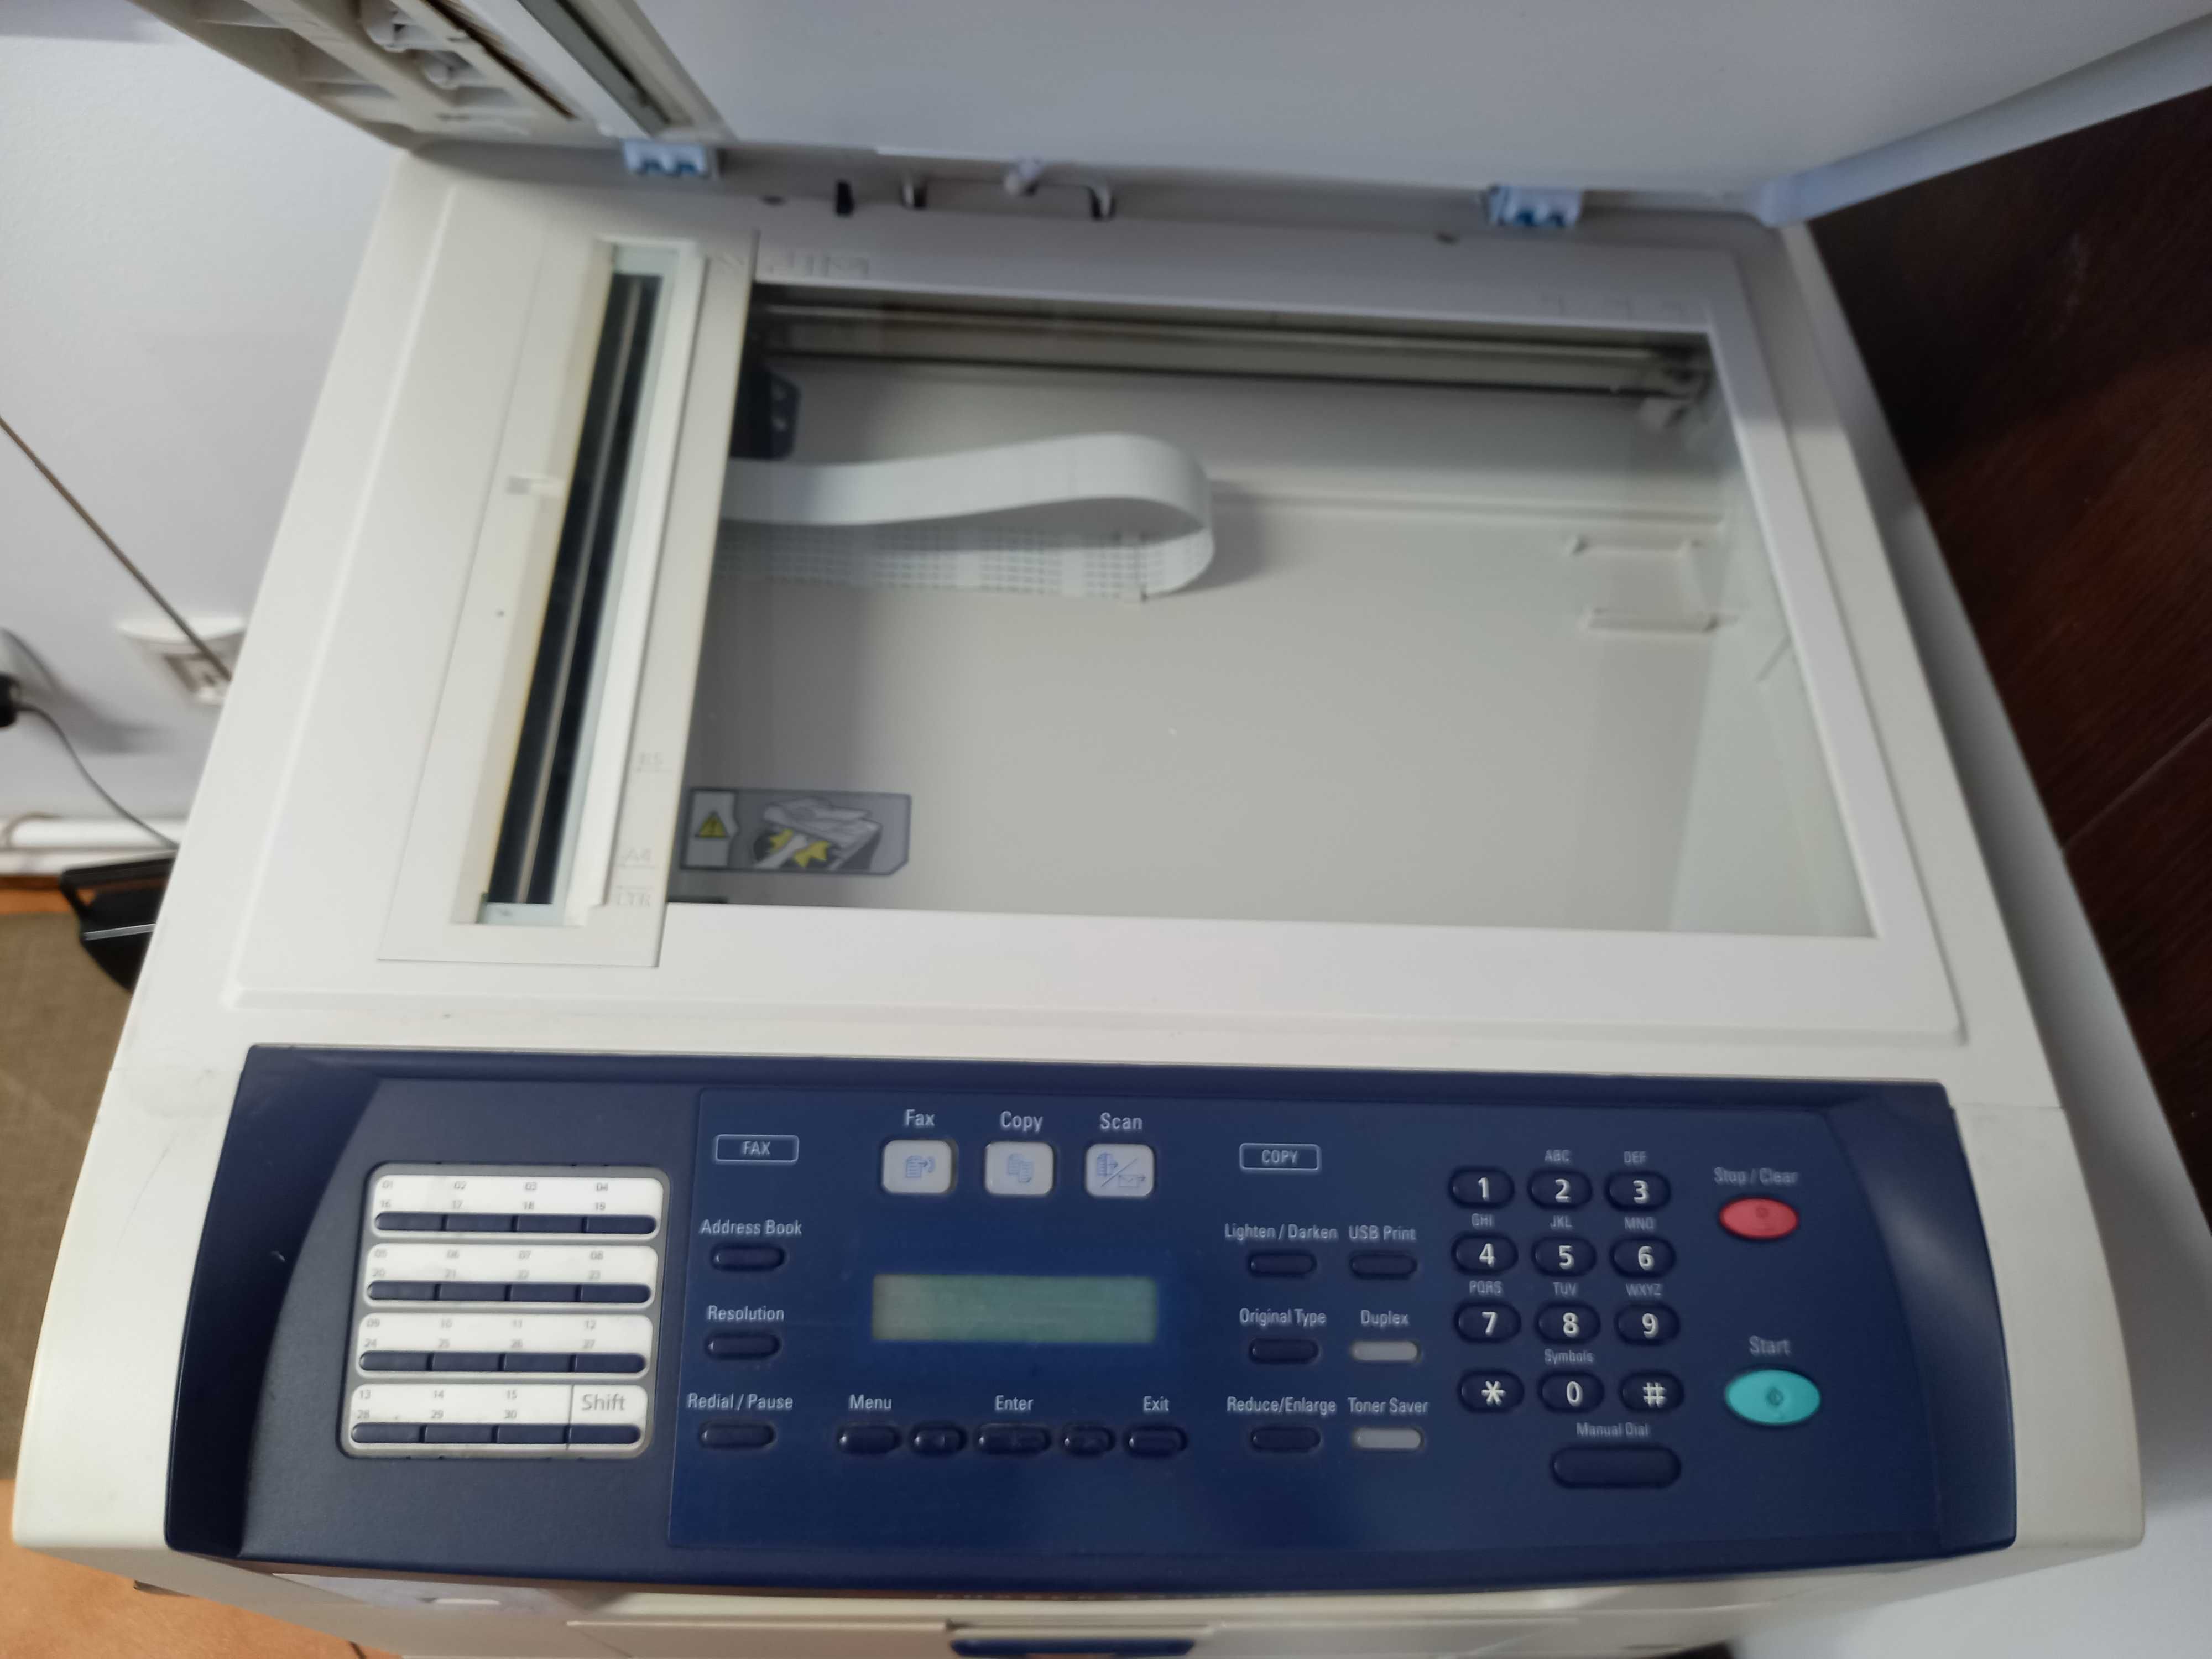 Imprimanta Xerox PHASER 3300 MFP